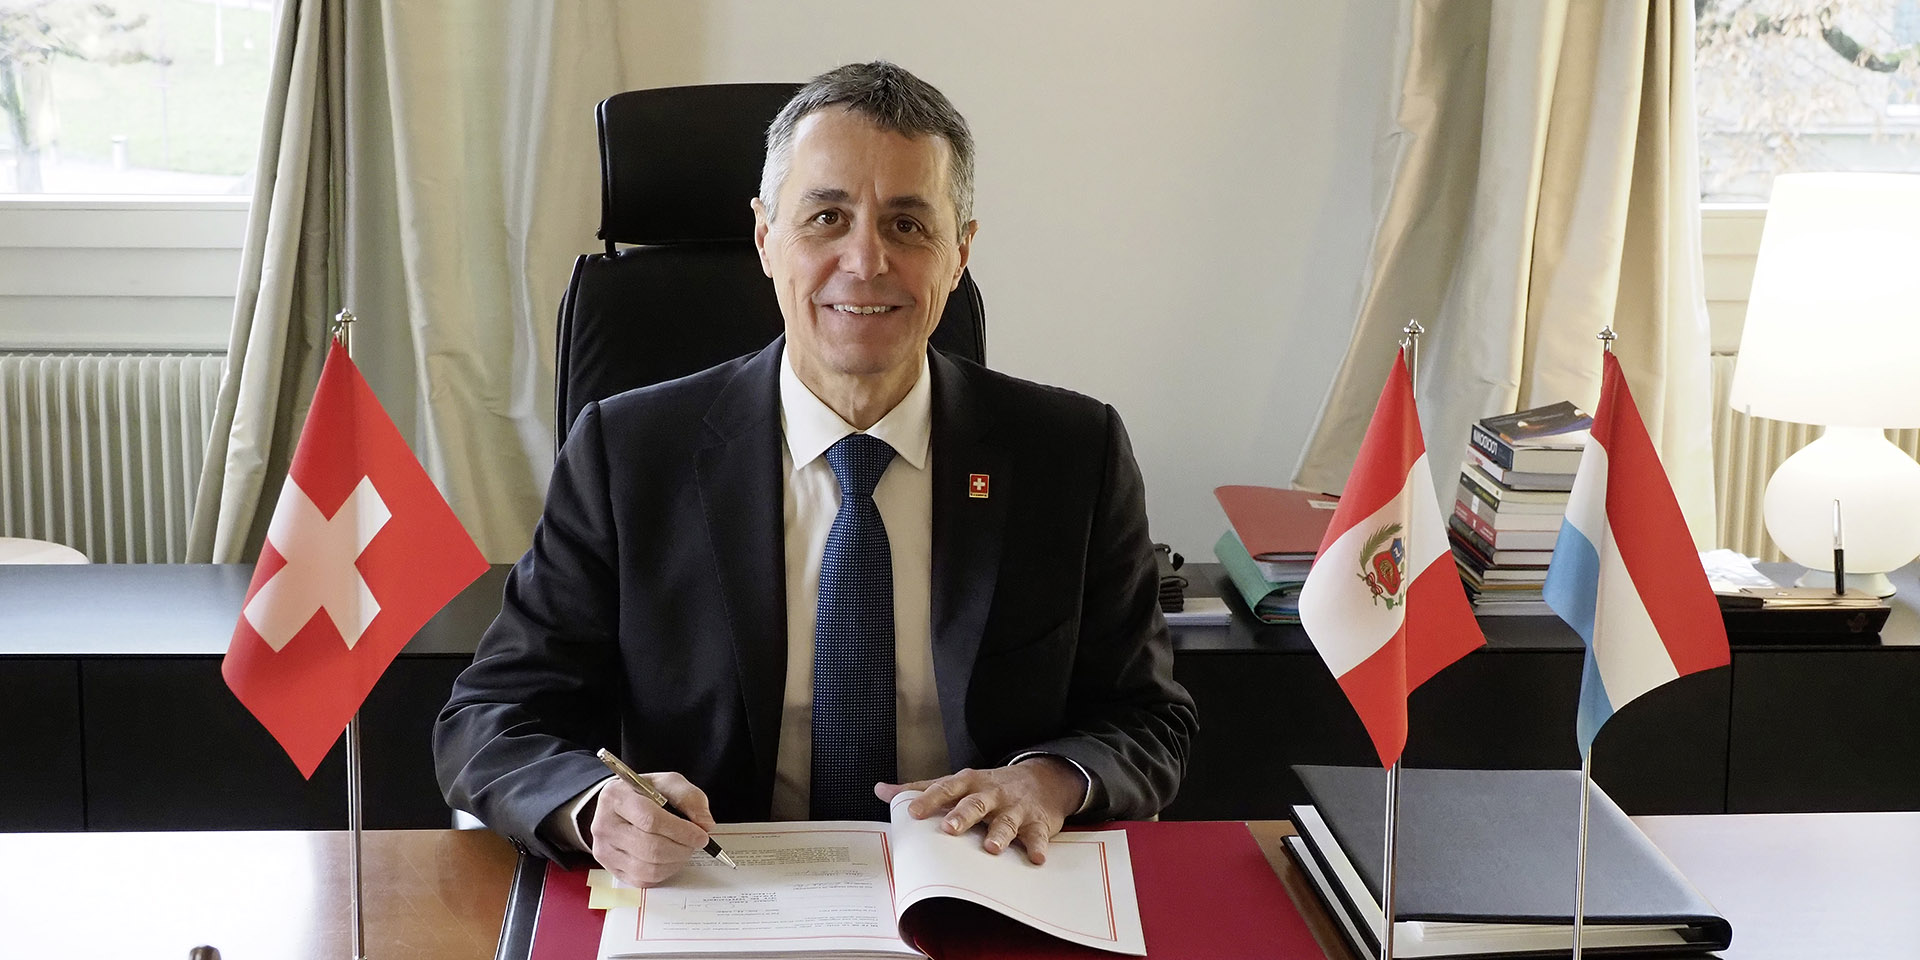 Bundesrat Ignazio Cassis unterzeichnet ein Dokument. Auf seinem Schreibtisch erscheinen die Fahnen der Schweiz (rechts von ihm), Perus und Luxemburgs (links von ihm).